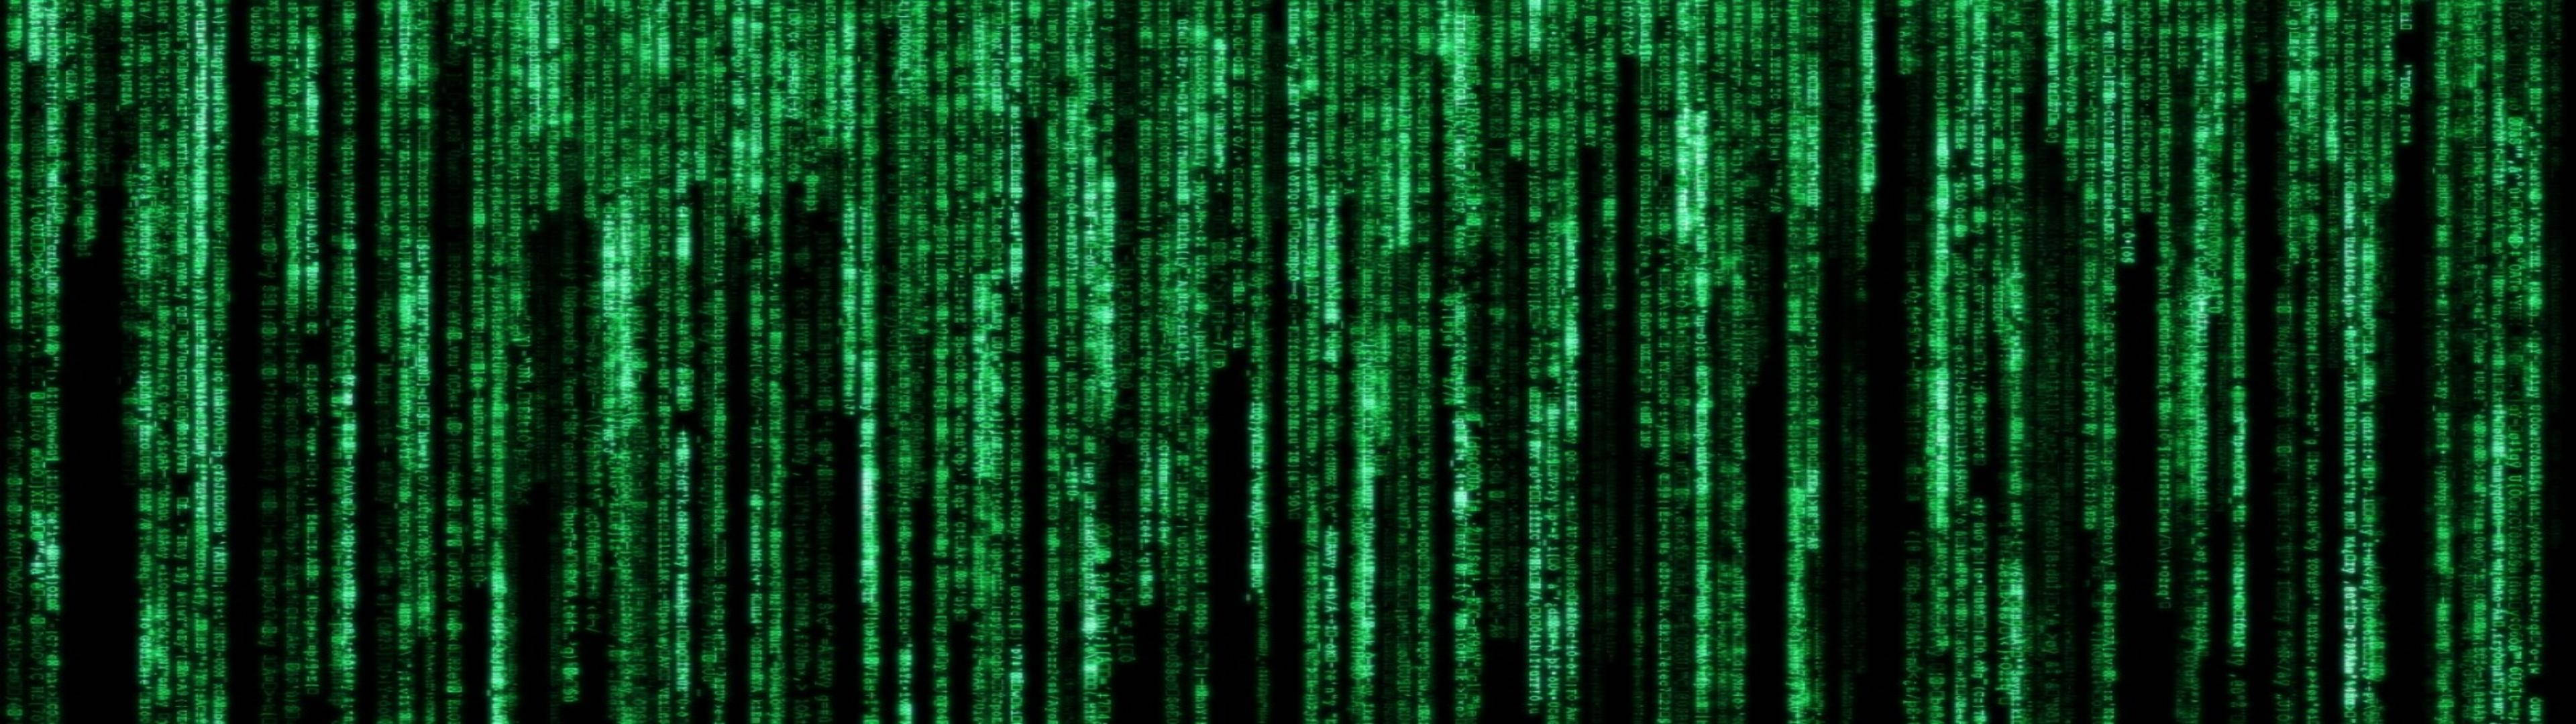 Green Binary Hacker Matrix